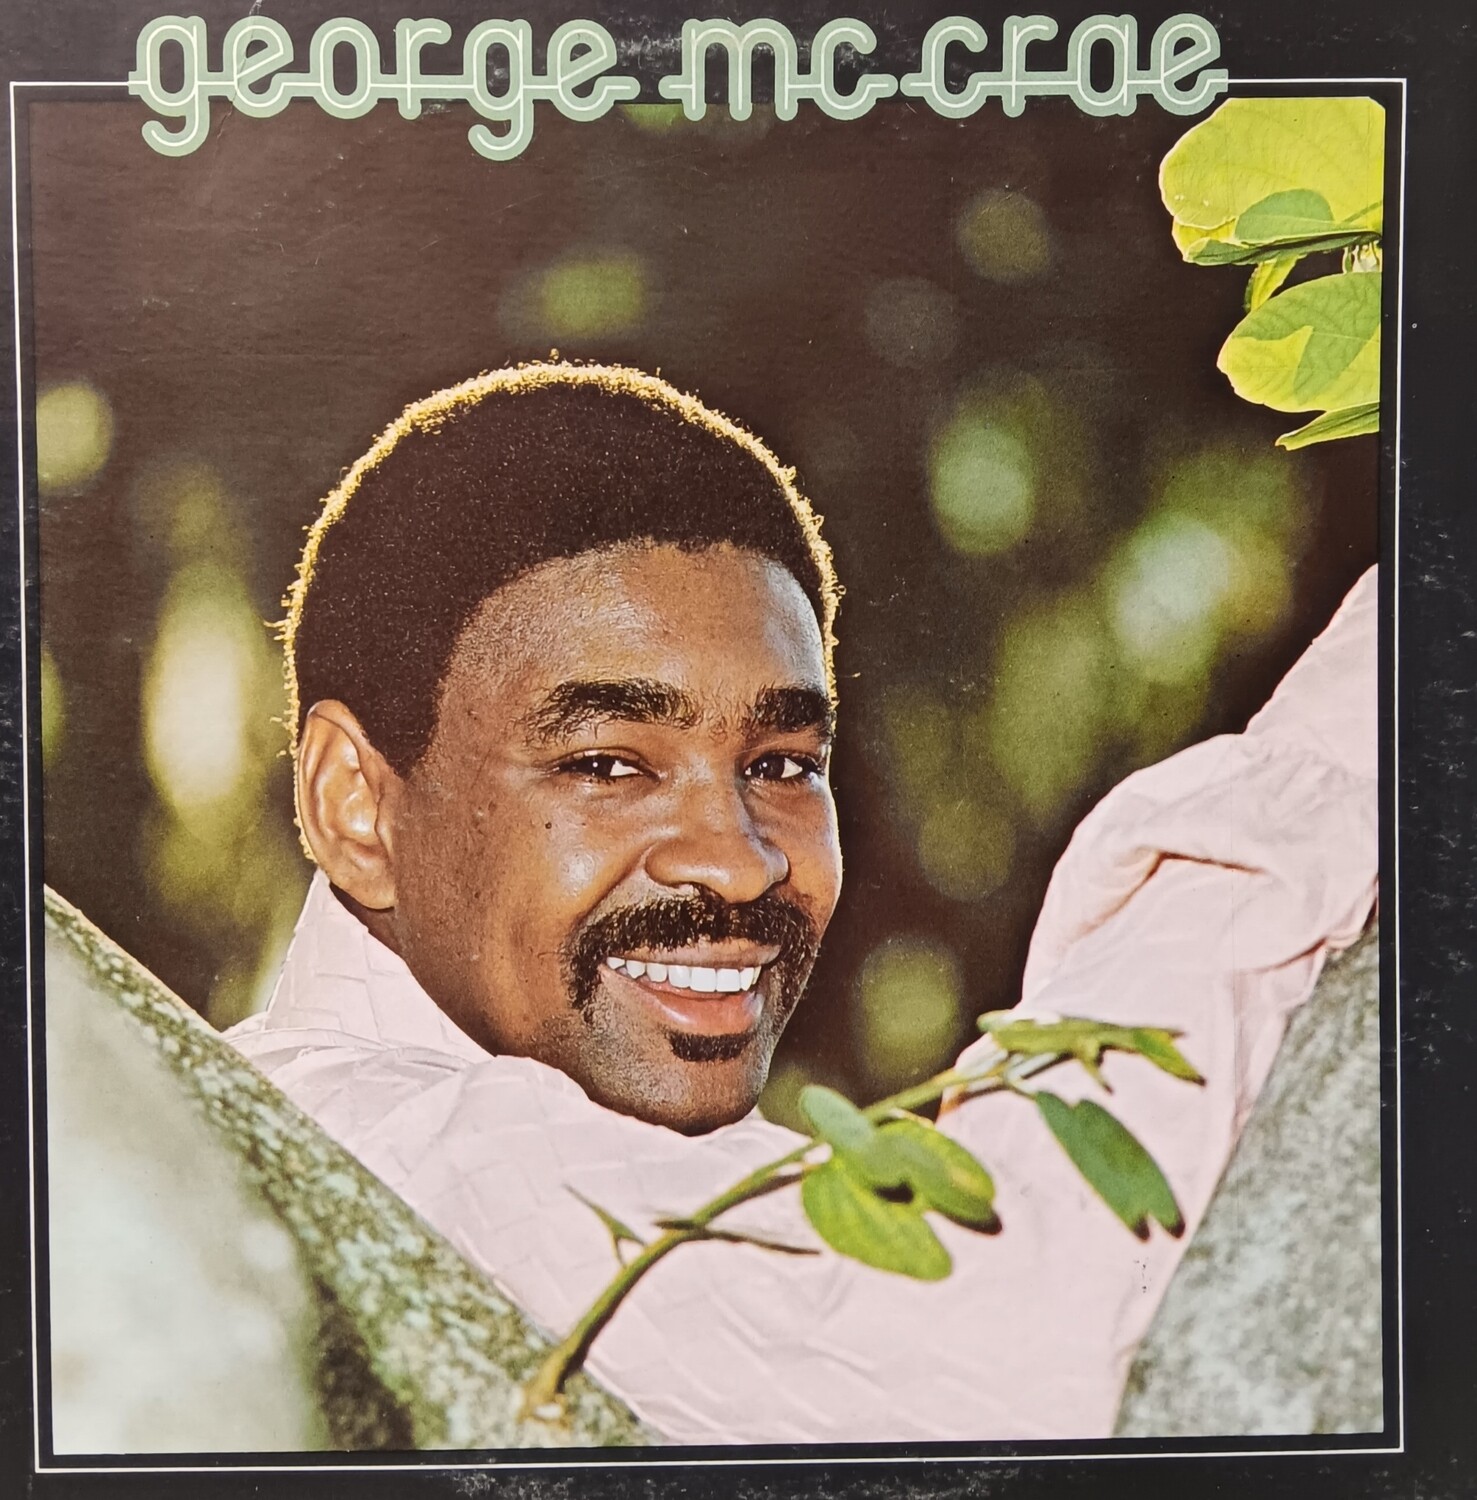 GEORGE MCCRAE - George McCrae